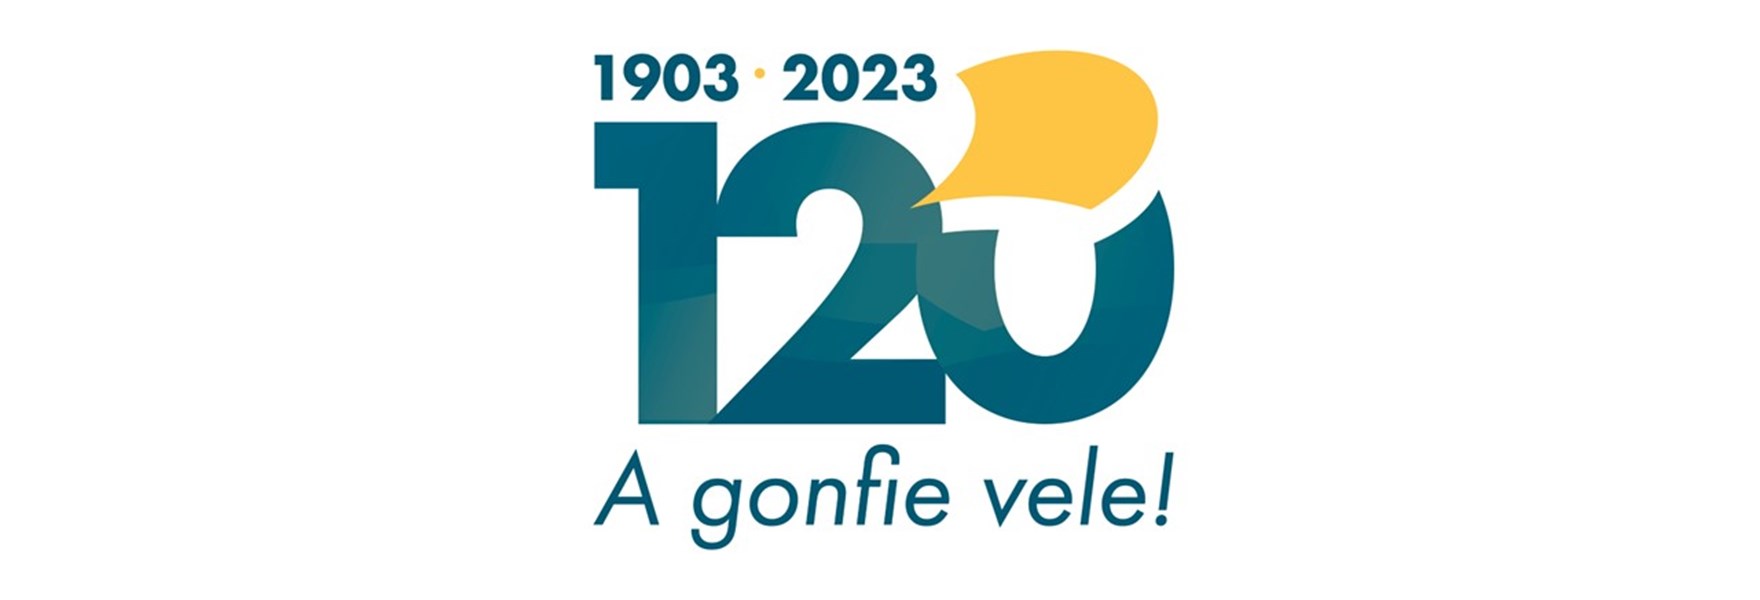 120 Anni Web2 